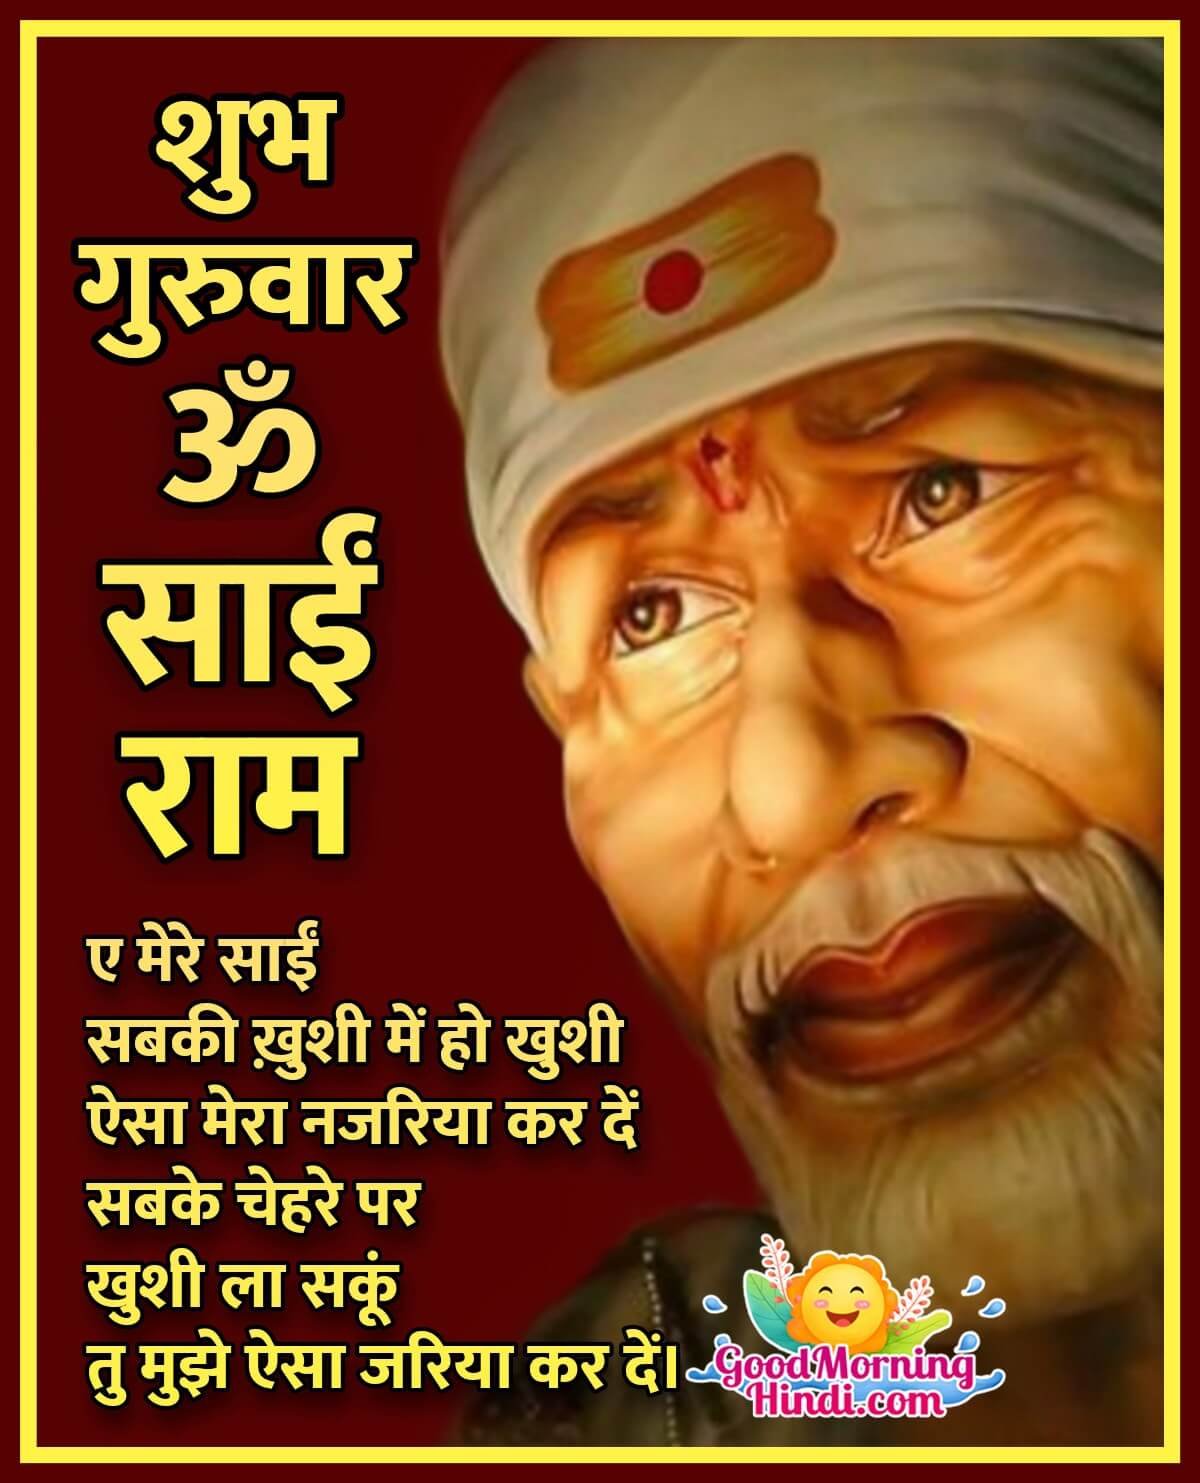 Sai Baba Thursday Images In Hindi